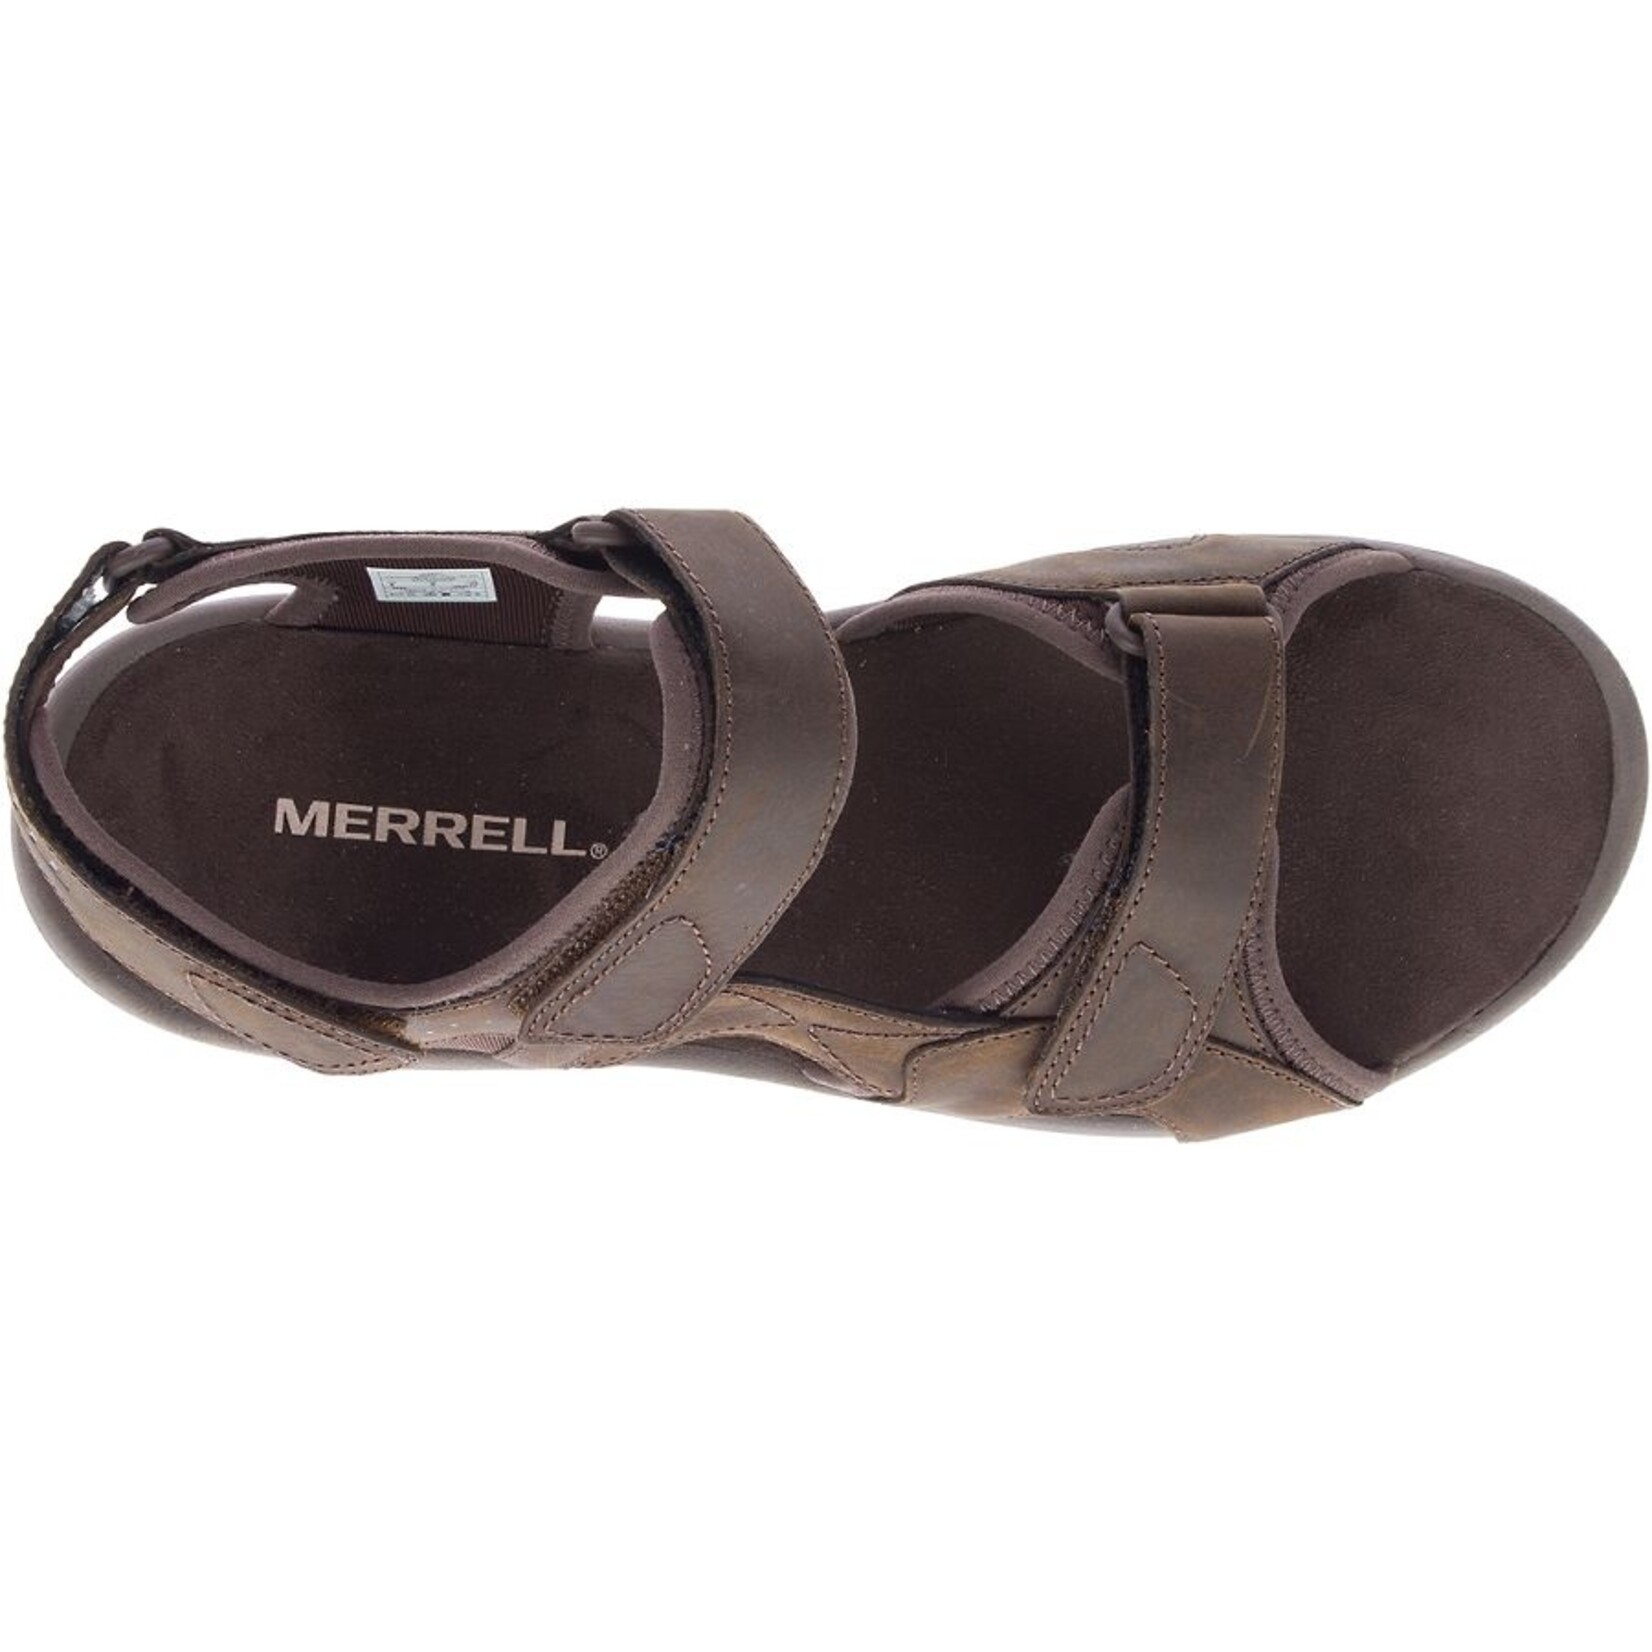 Merrell MERRELL Sandspur 2 Convertible